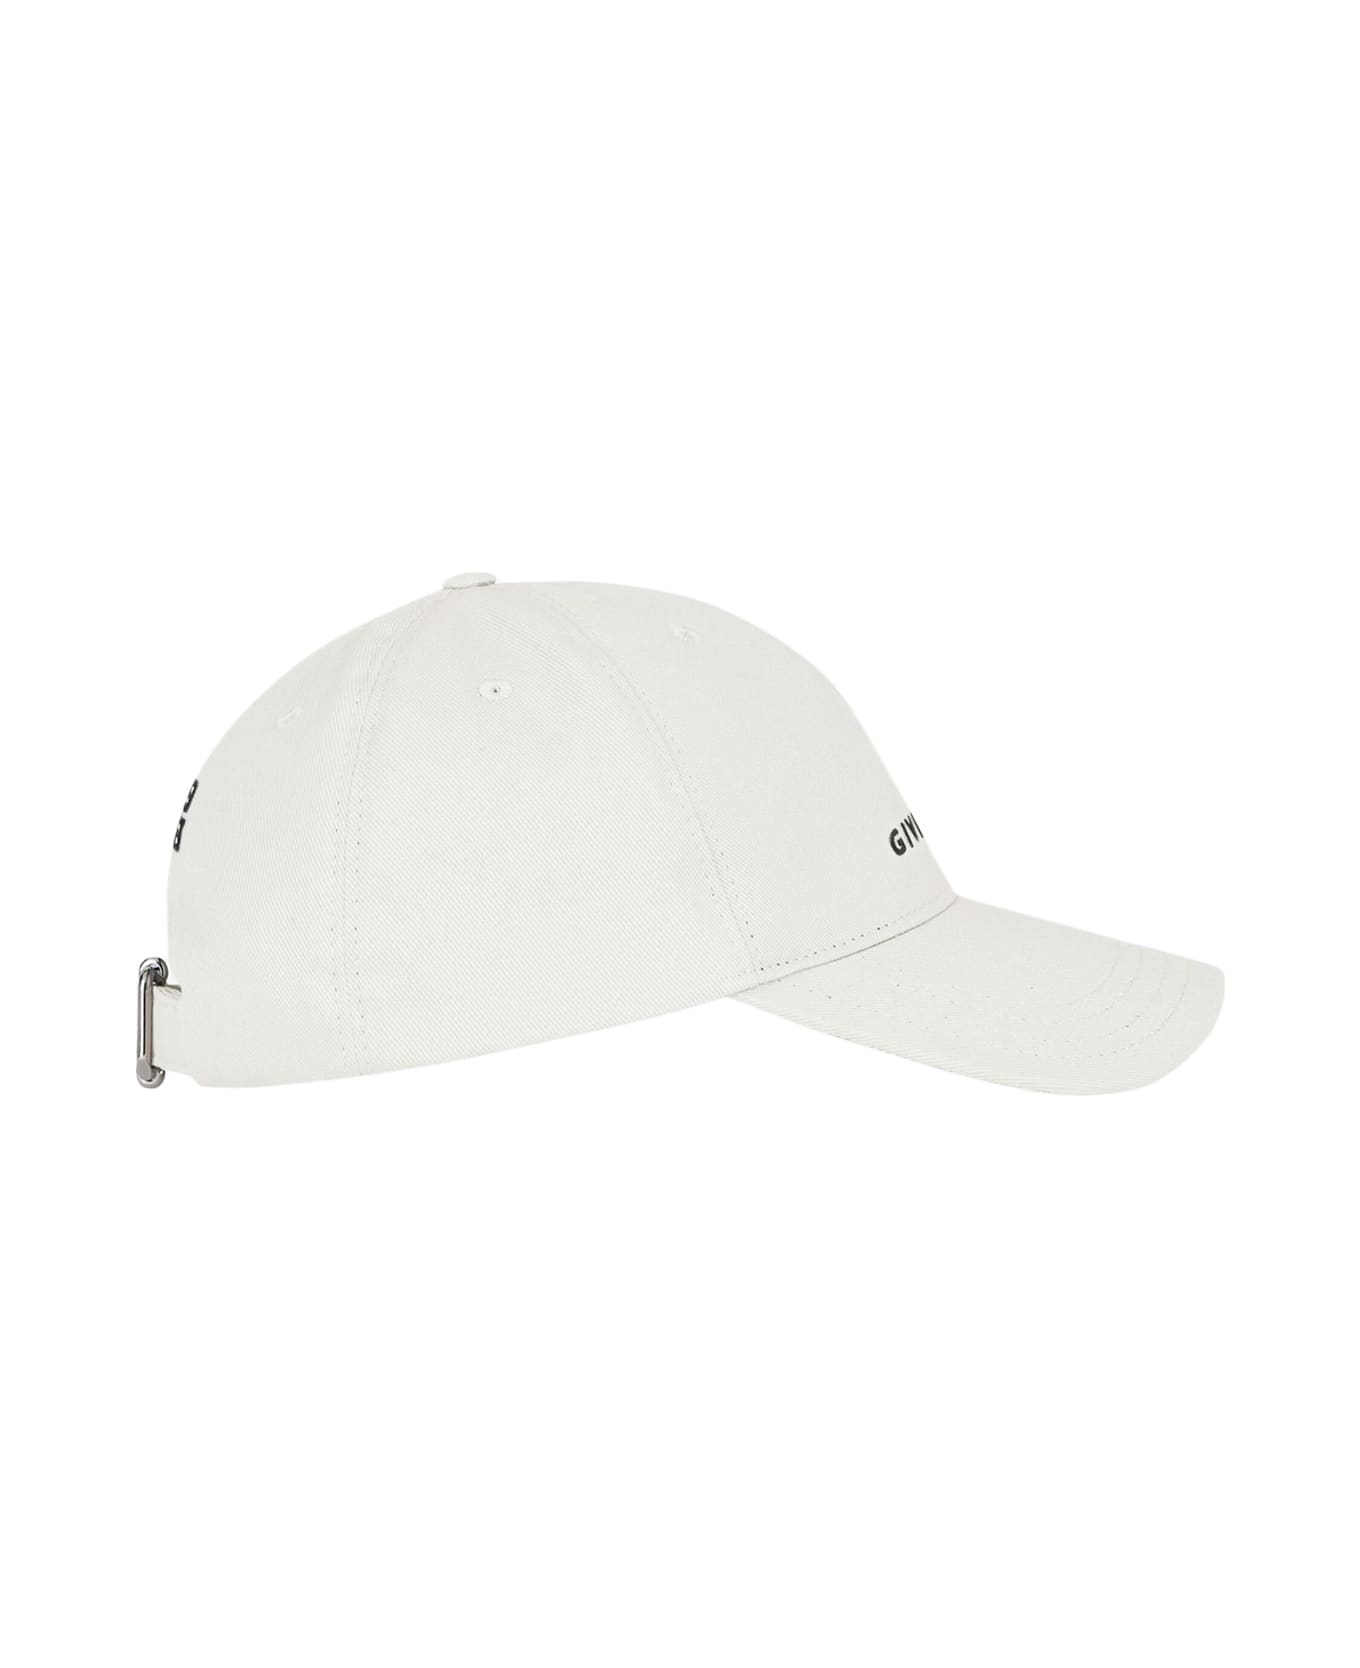 Givenchy Baseball Hat - Grey